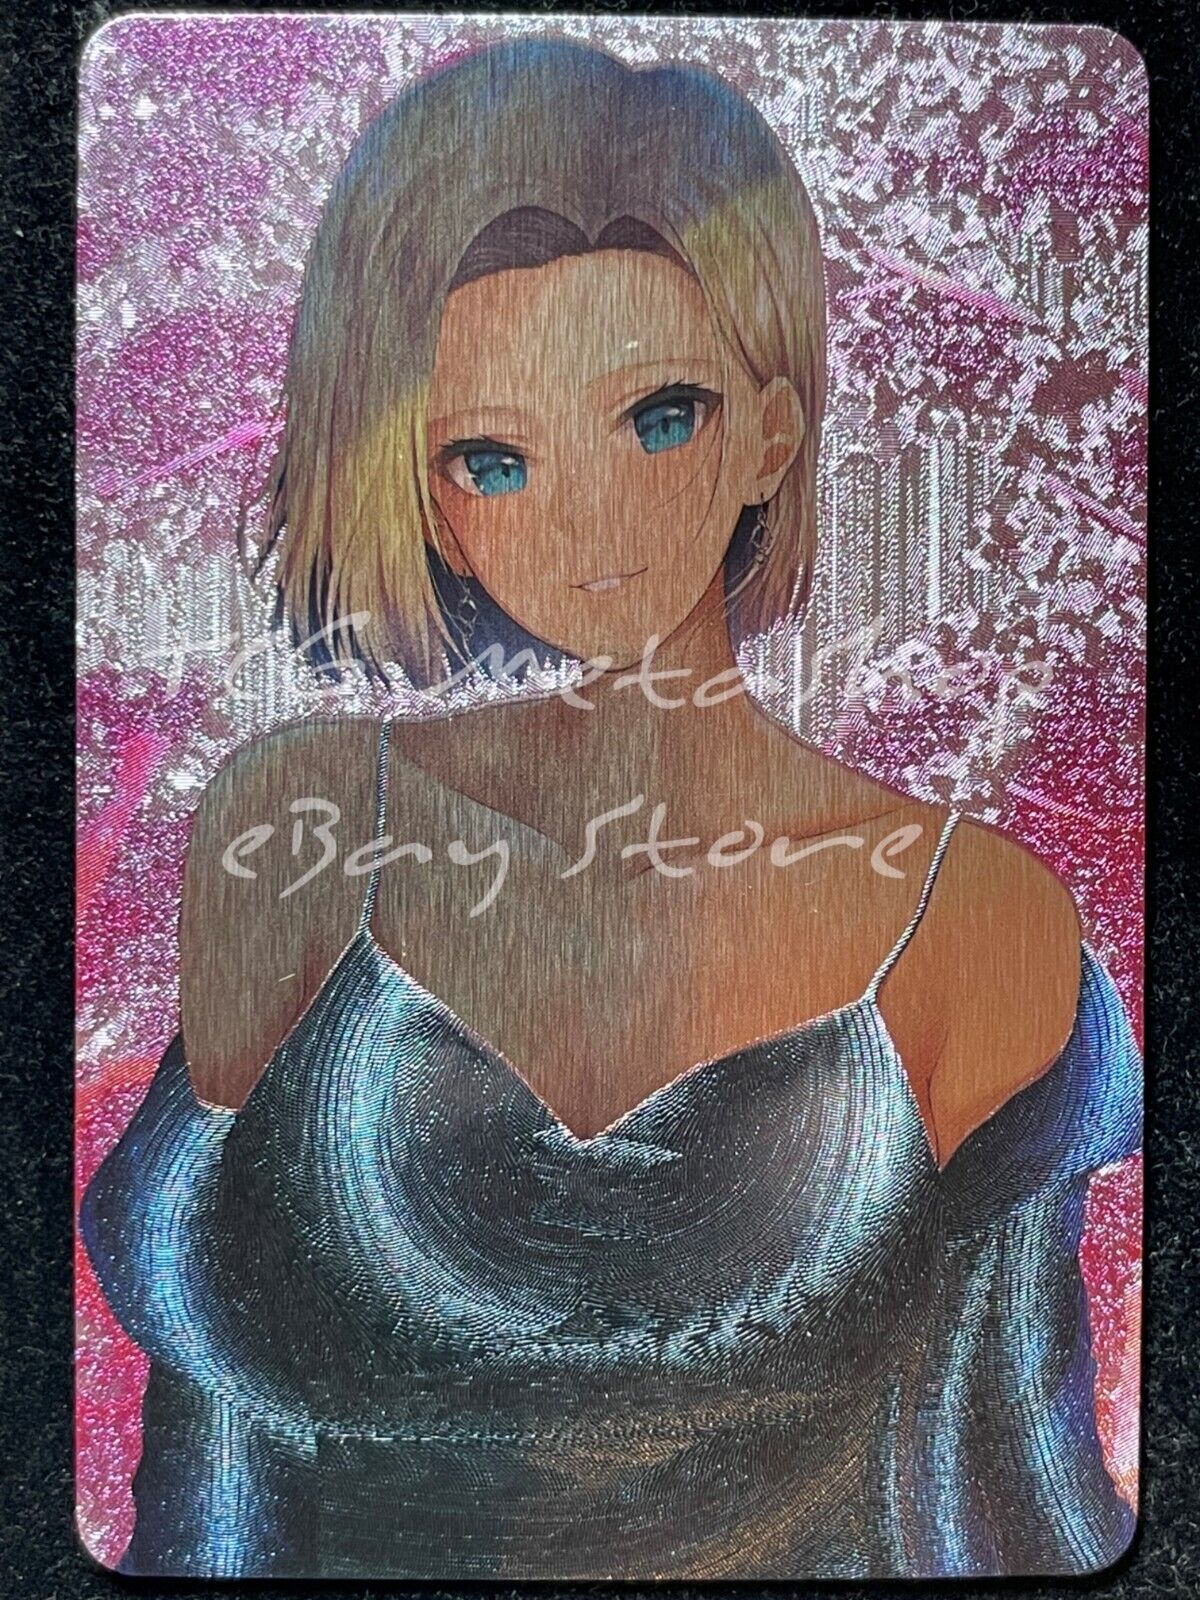 🔥 Android 18 Dragon Ball Goddess Story Anime Card ACG # 1672 🔥